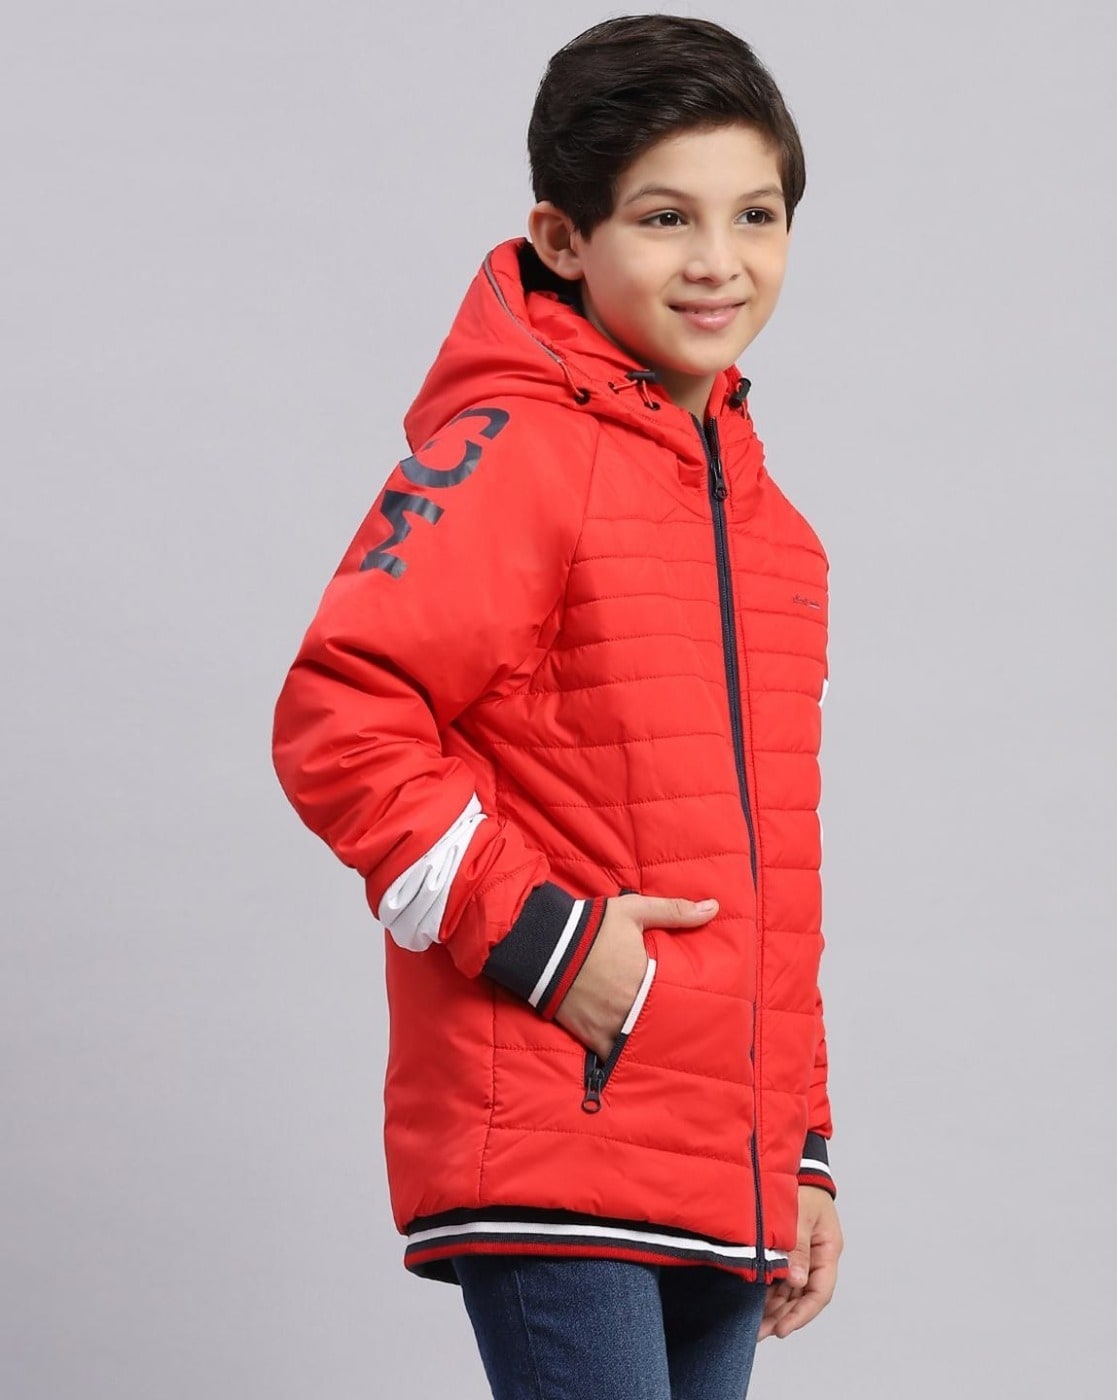 Kids' Jackets: Rain, Puffer & Packable Jackets for Boys & Girls | REI Co-op